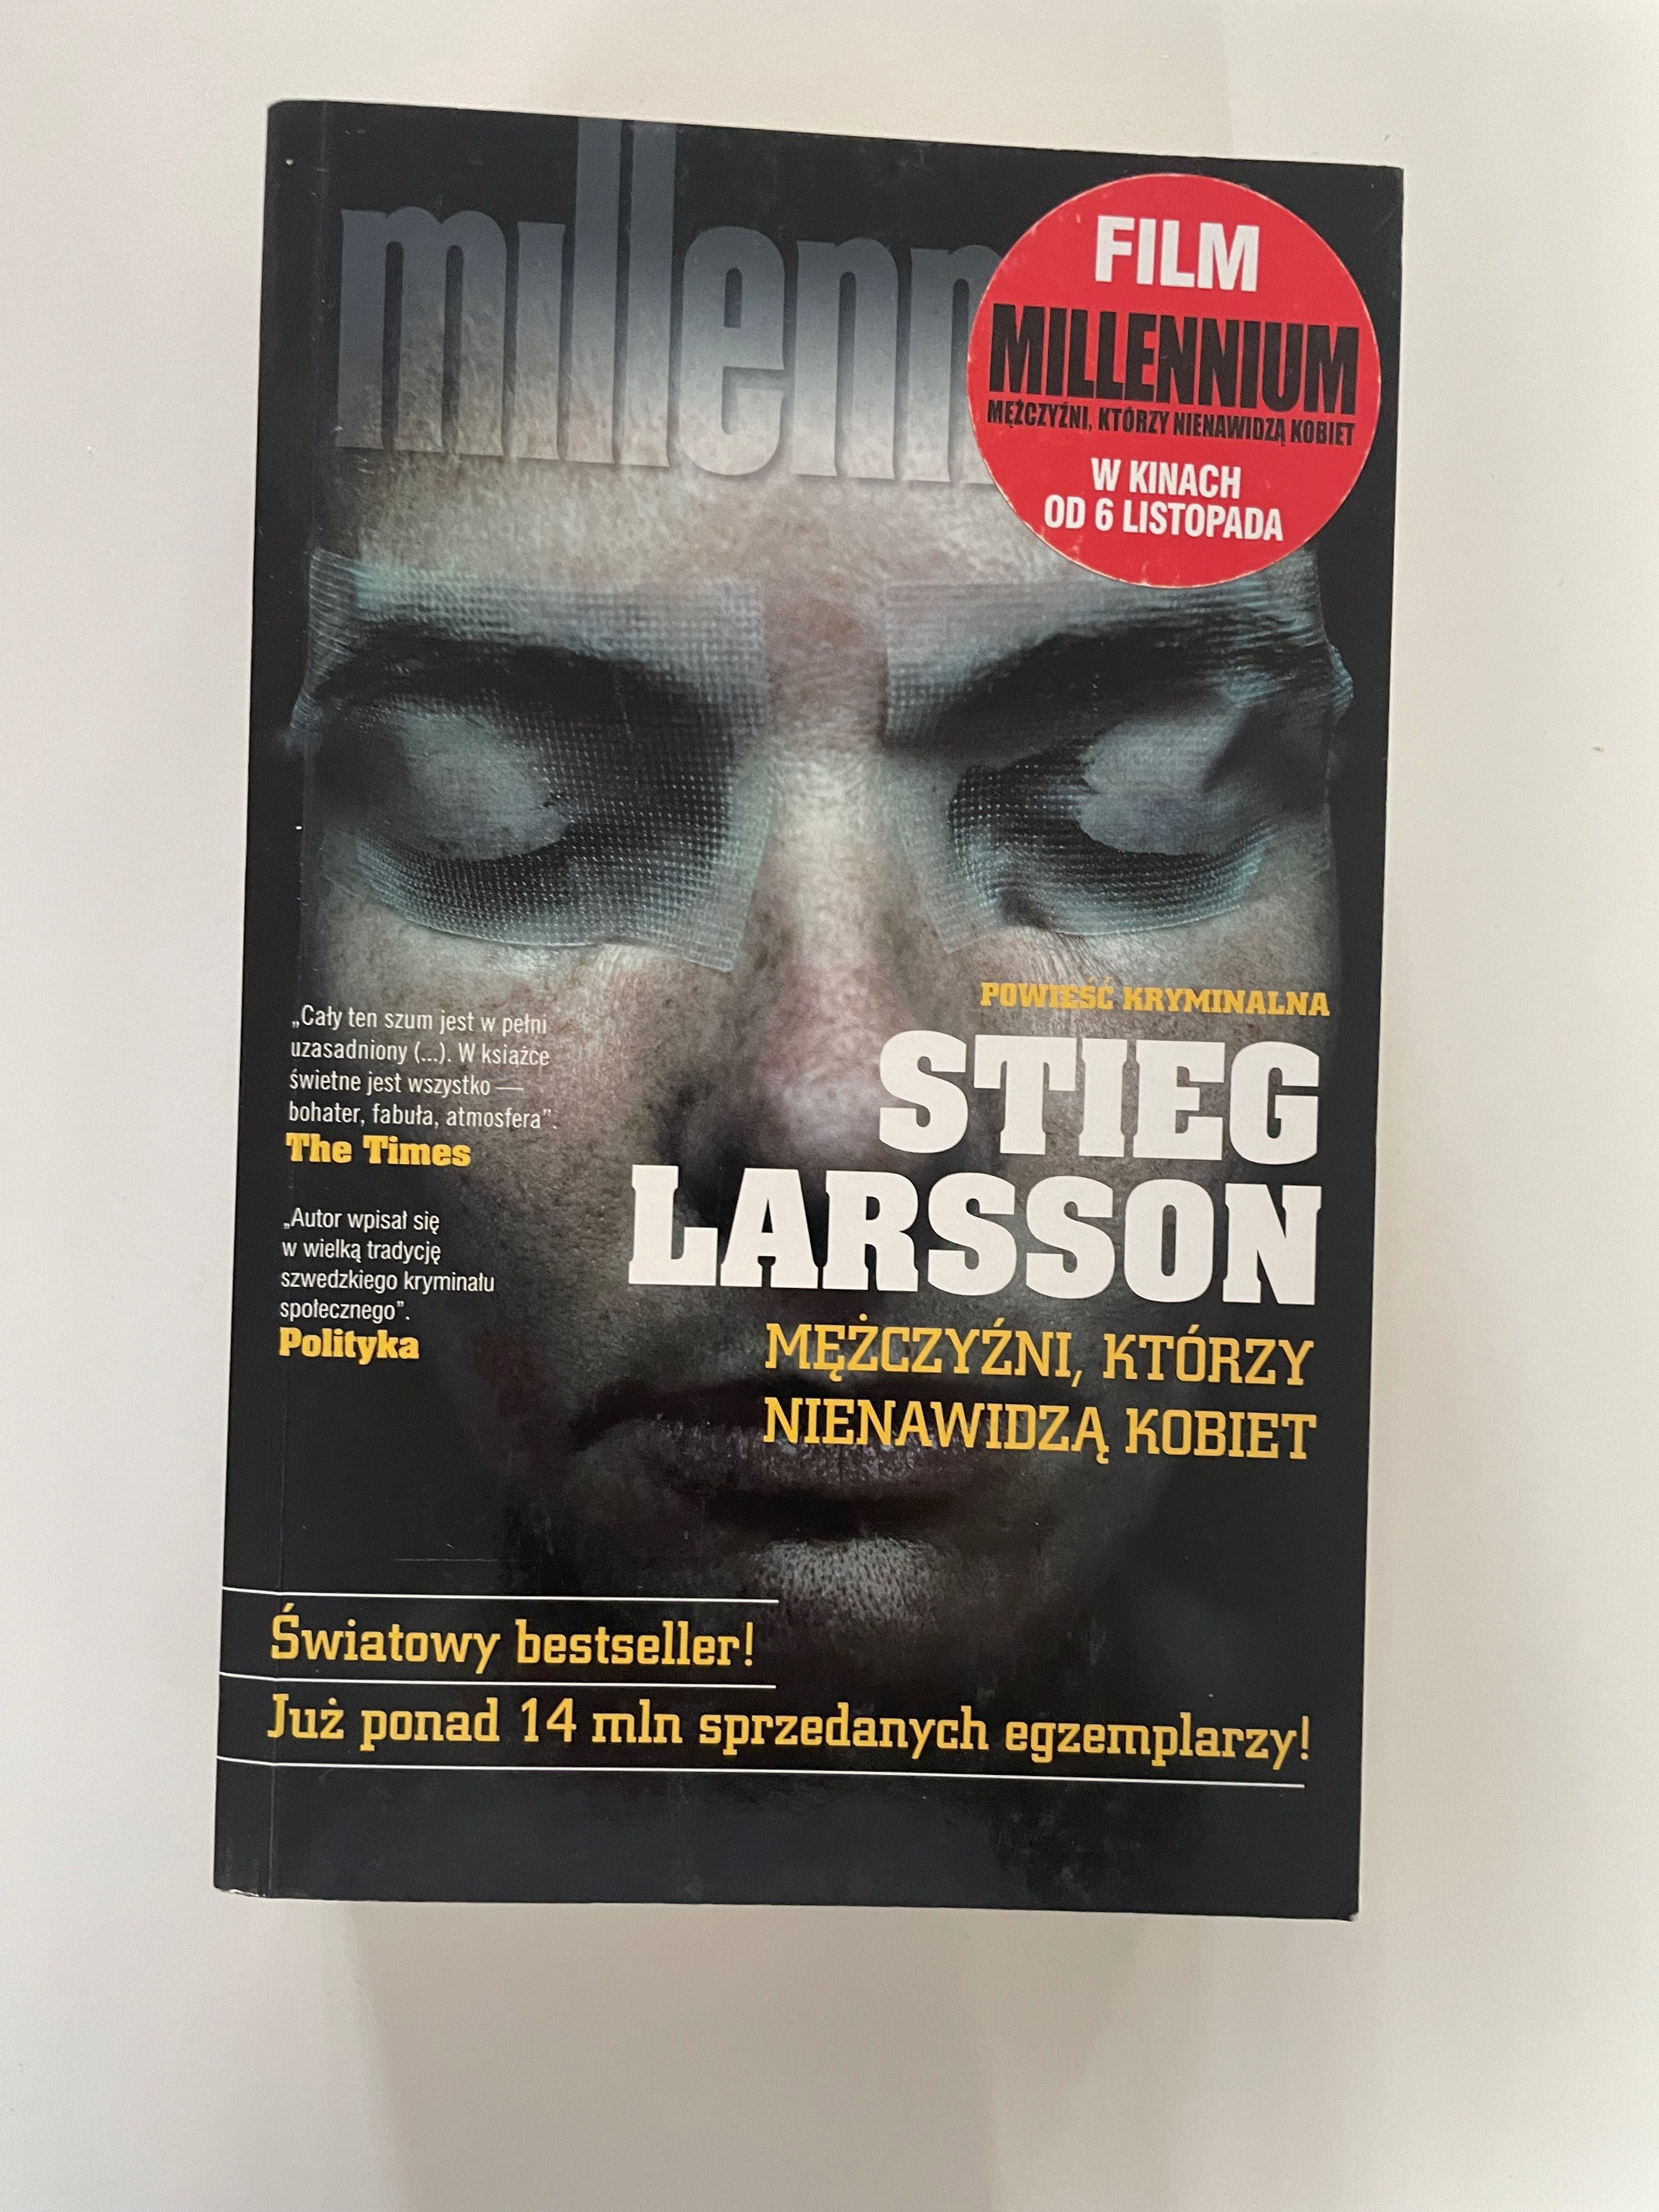 Stieg Larsson Mężczyźni, którzy nienawidzą kobiet Millennium